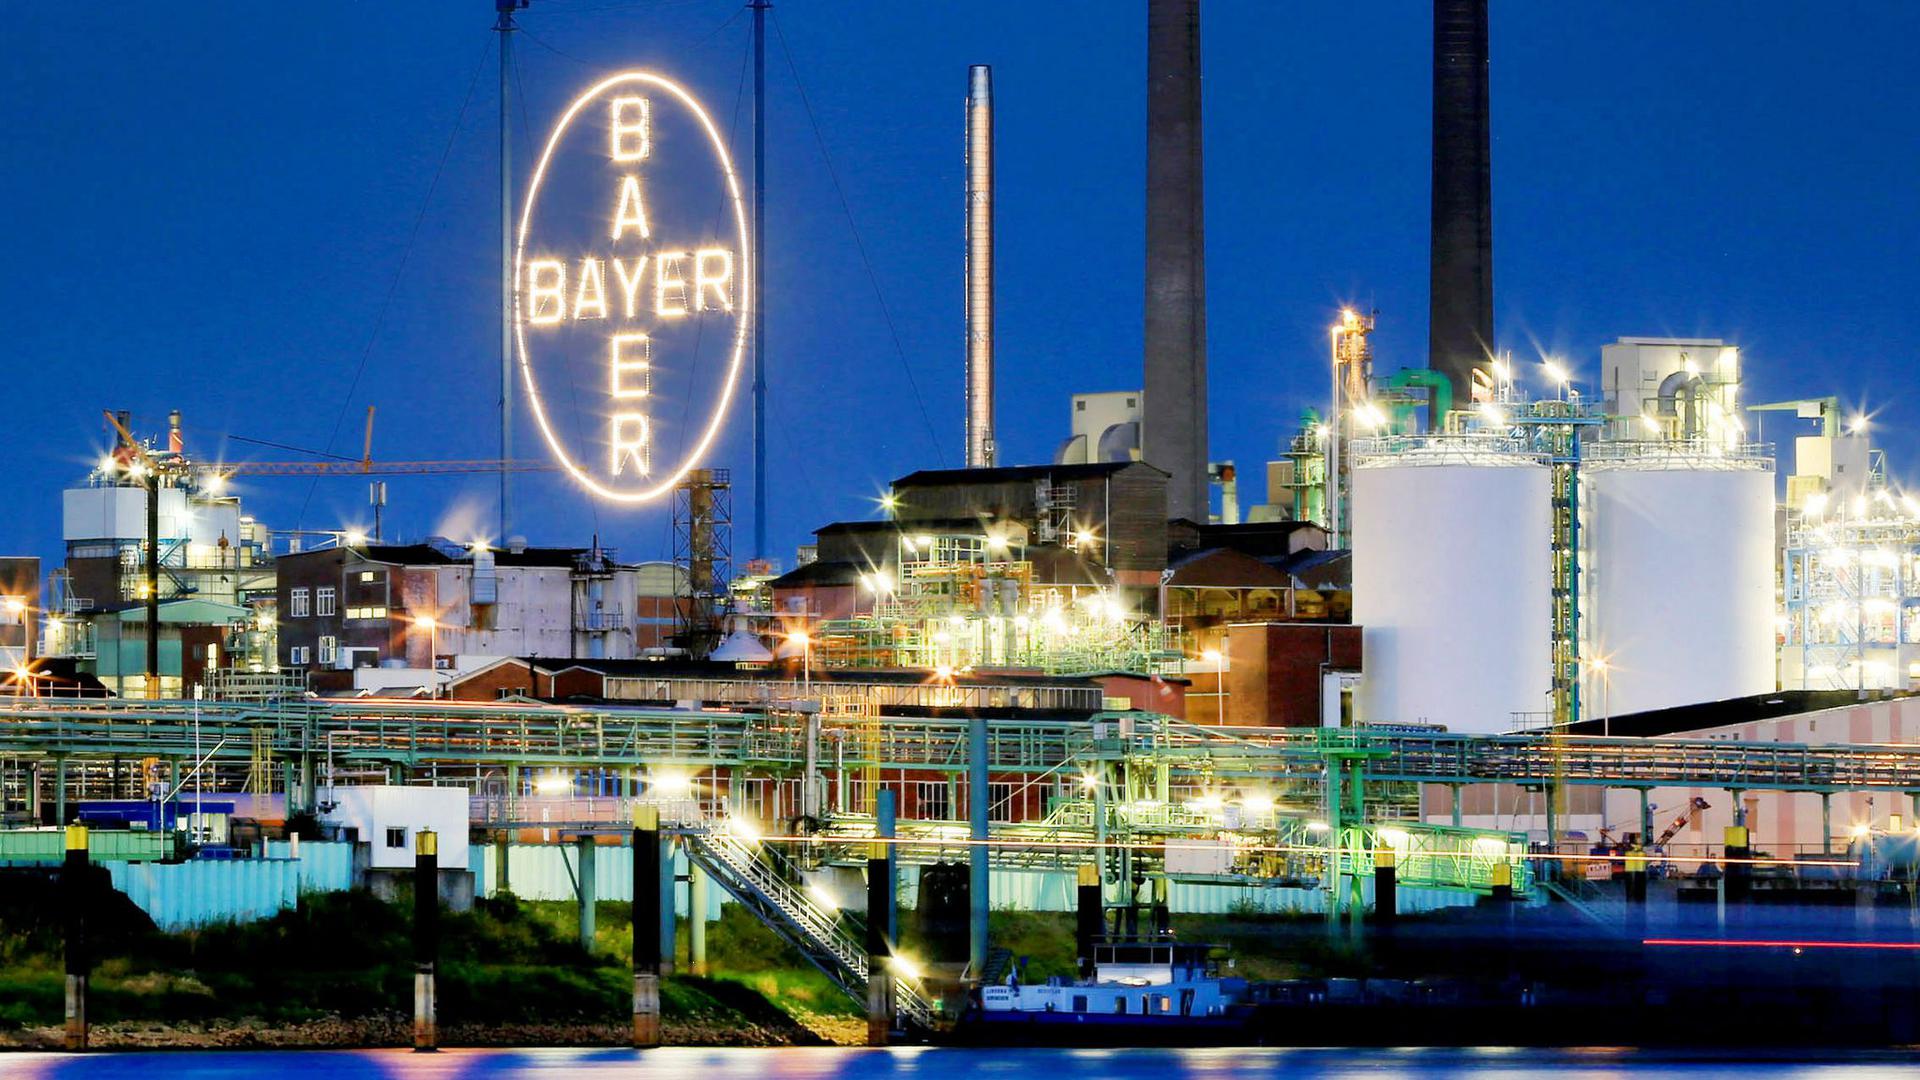 Das Bayer Werk in Leverkusen, fotografiert vom Rheinufer in Köln. Der Pharma- und Agrarchemiekonzern Bayer will noch mehr sparen.